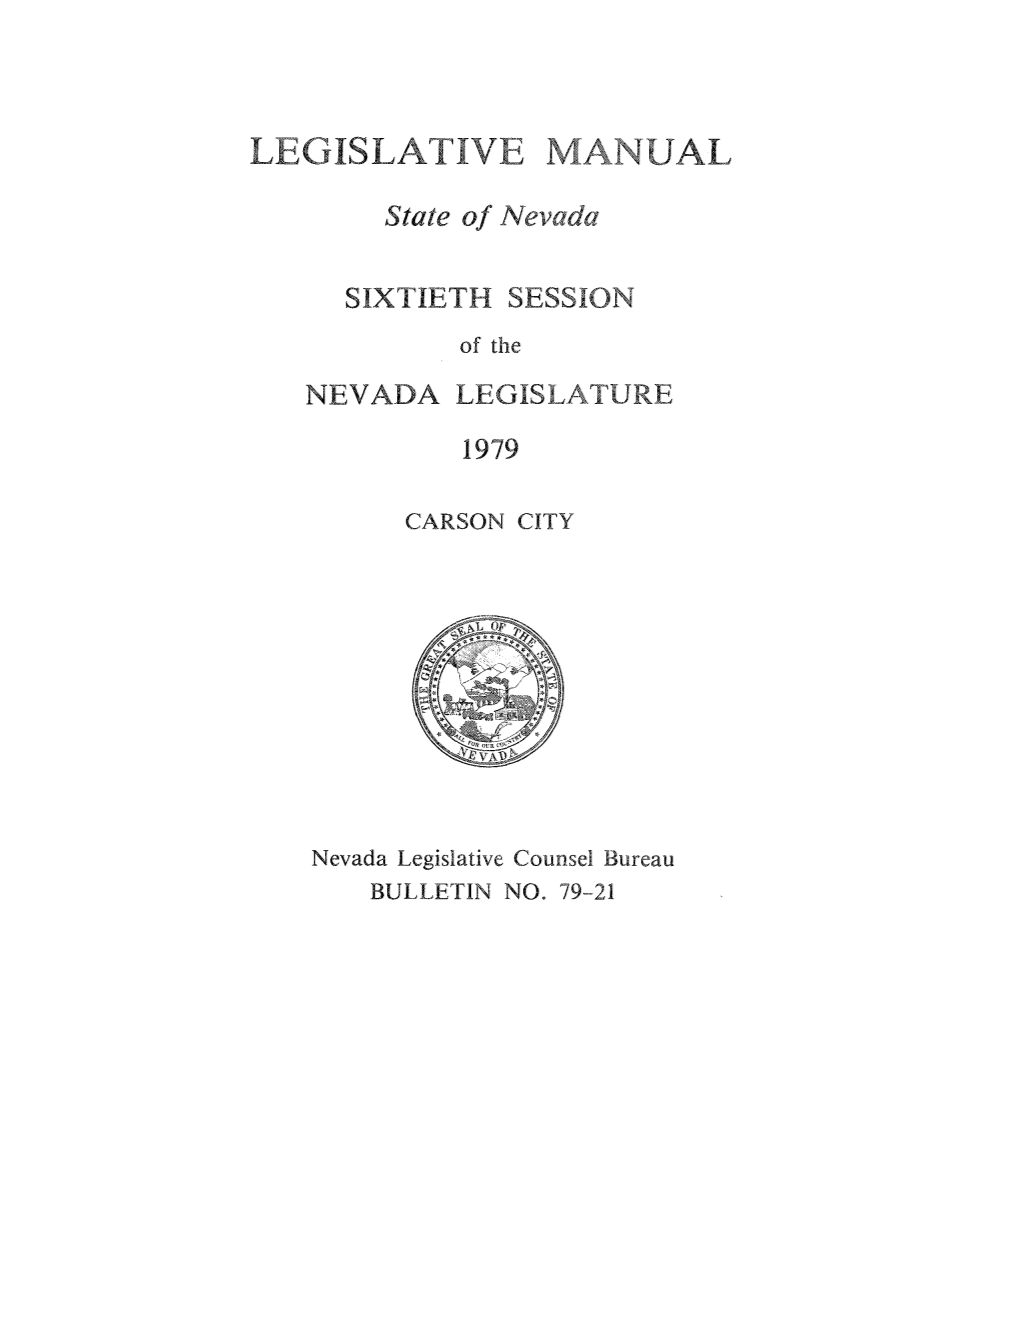 Bulletin 79-21 Legislative Manual (1979)